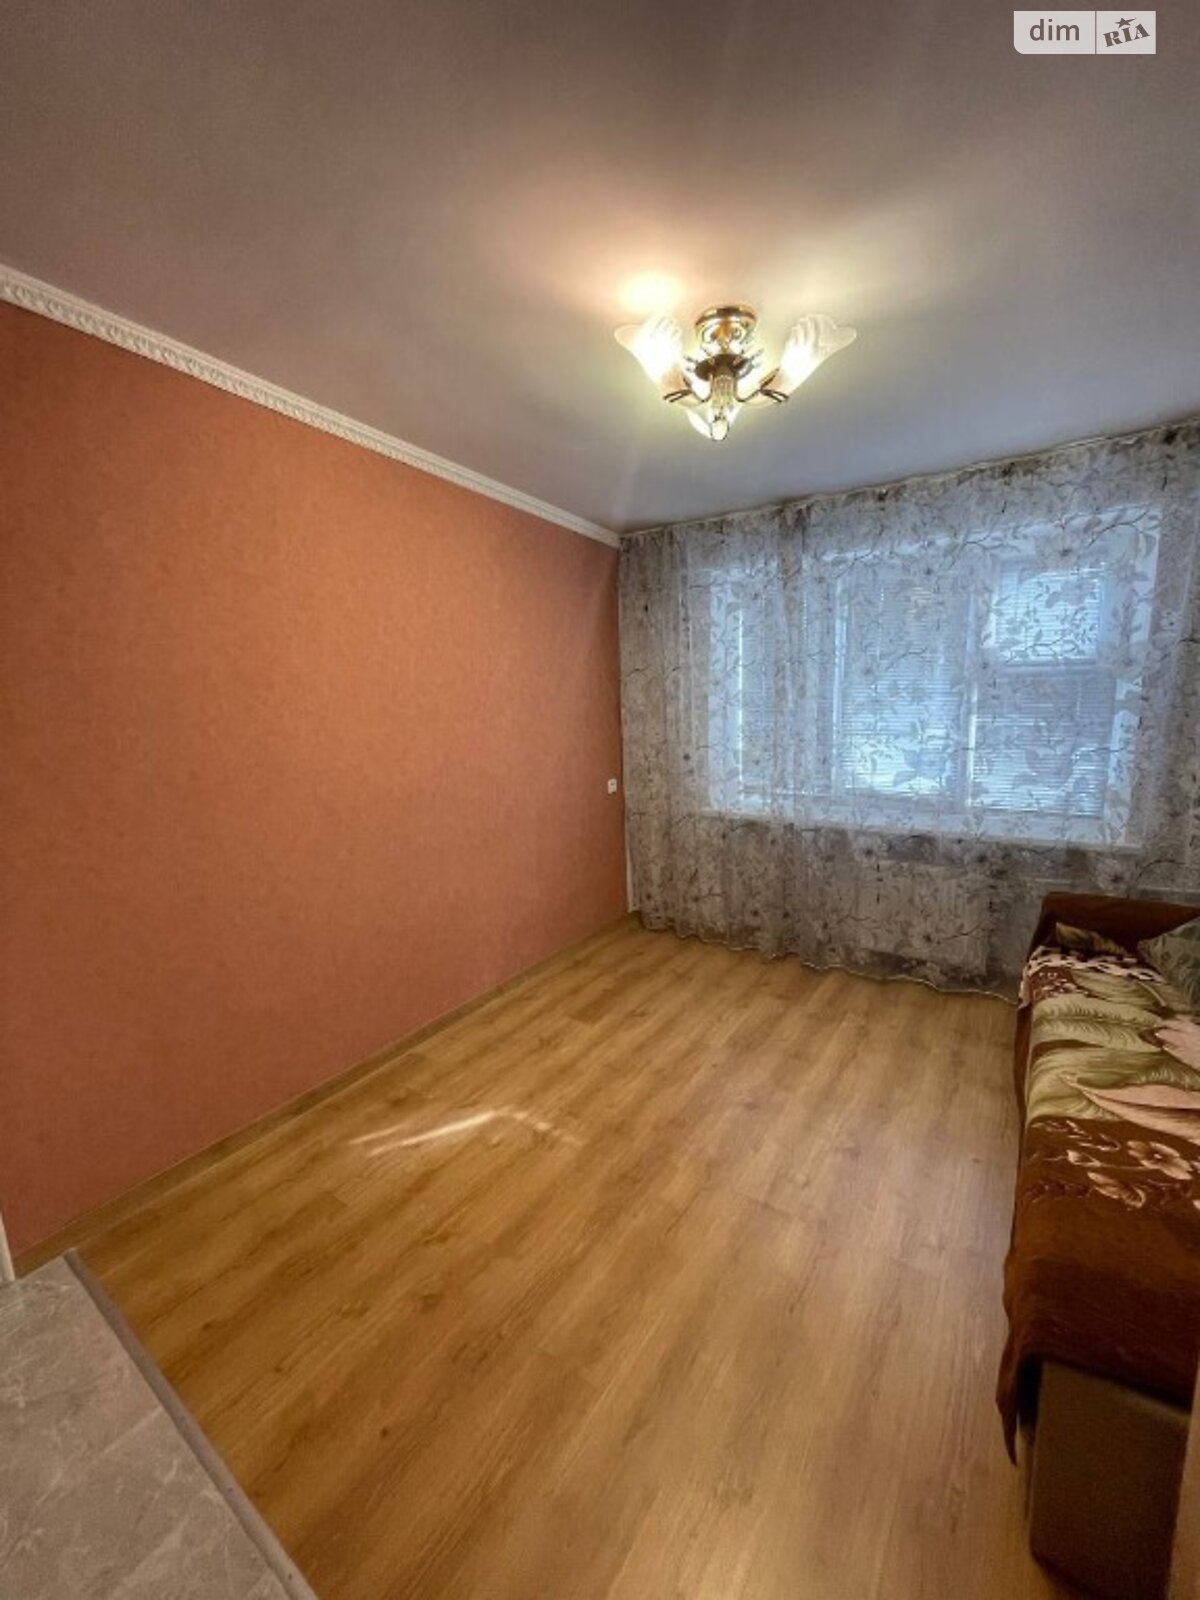 Кімната в Броварах на вул. Сергія Москаленка 2 в районі Торгмаш на продаж фото 1